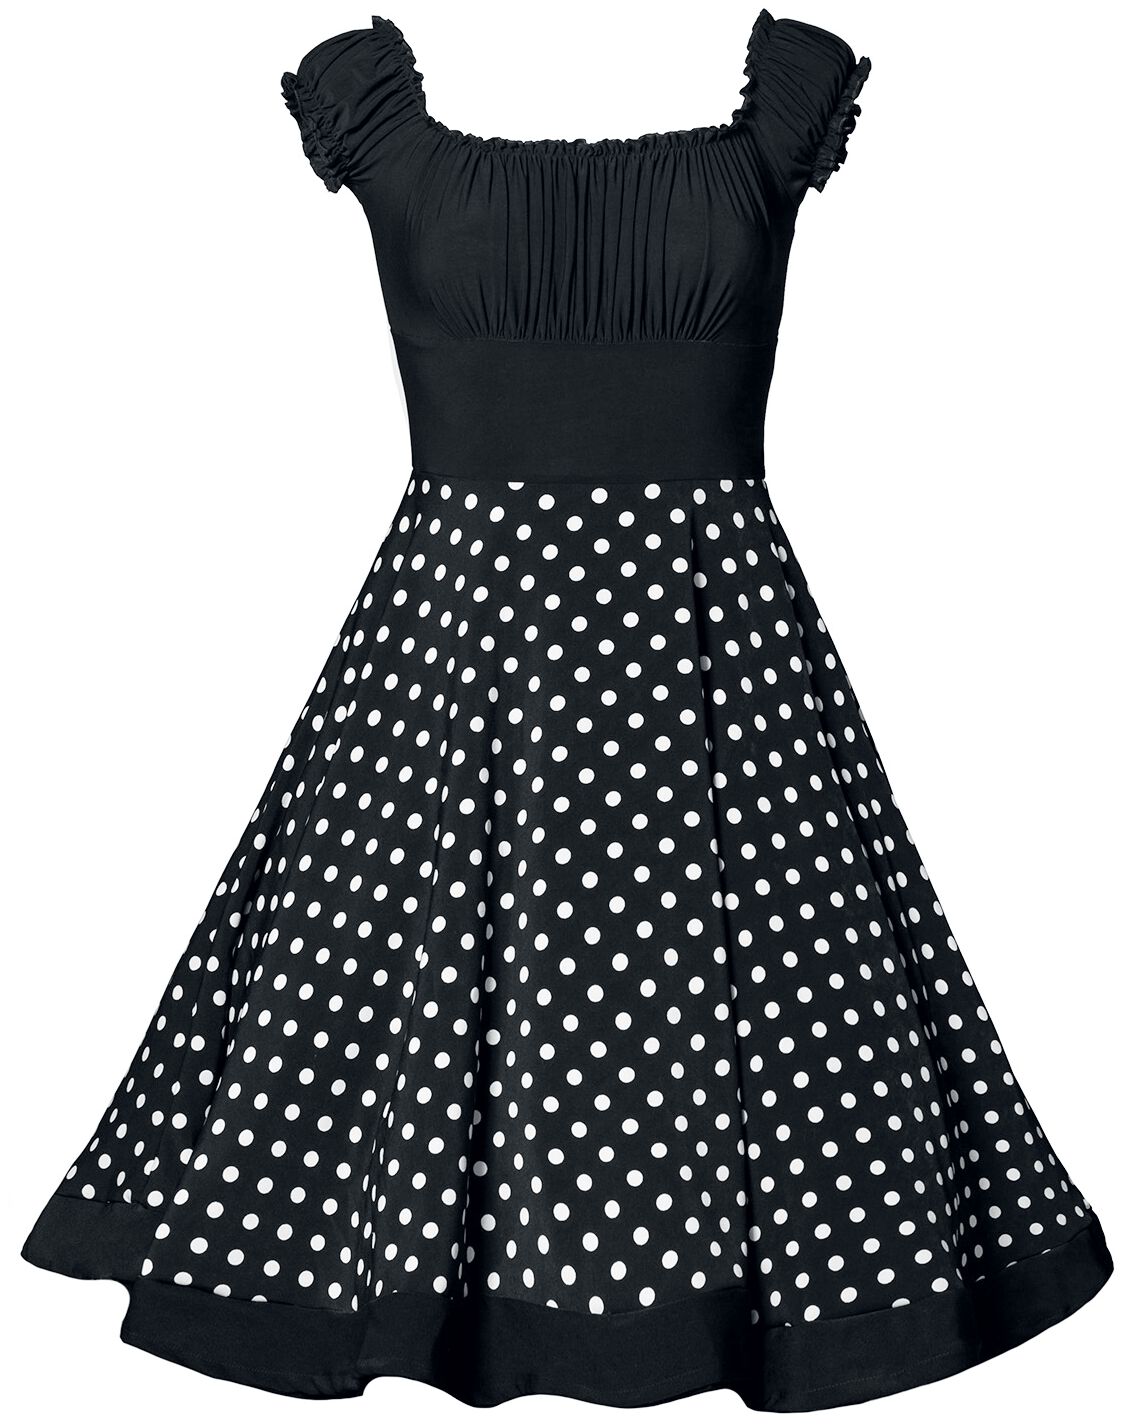 Belsira Schulterfreies Swing-Kleid Mittellanges Kleid schwarz weiß in XS